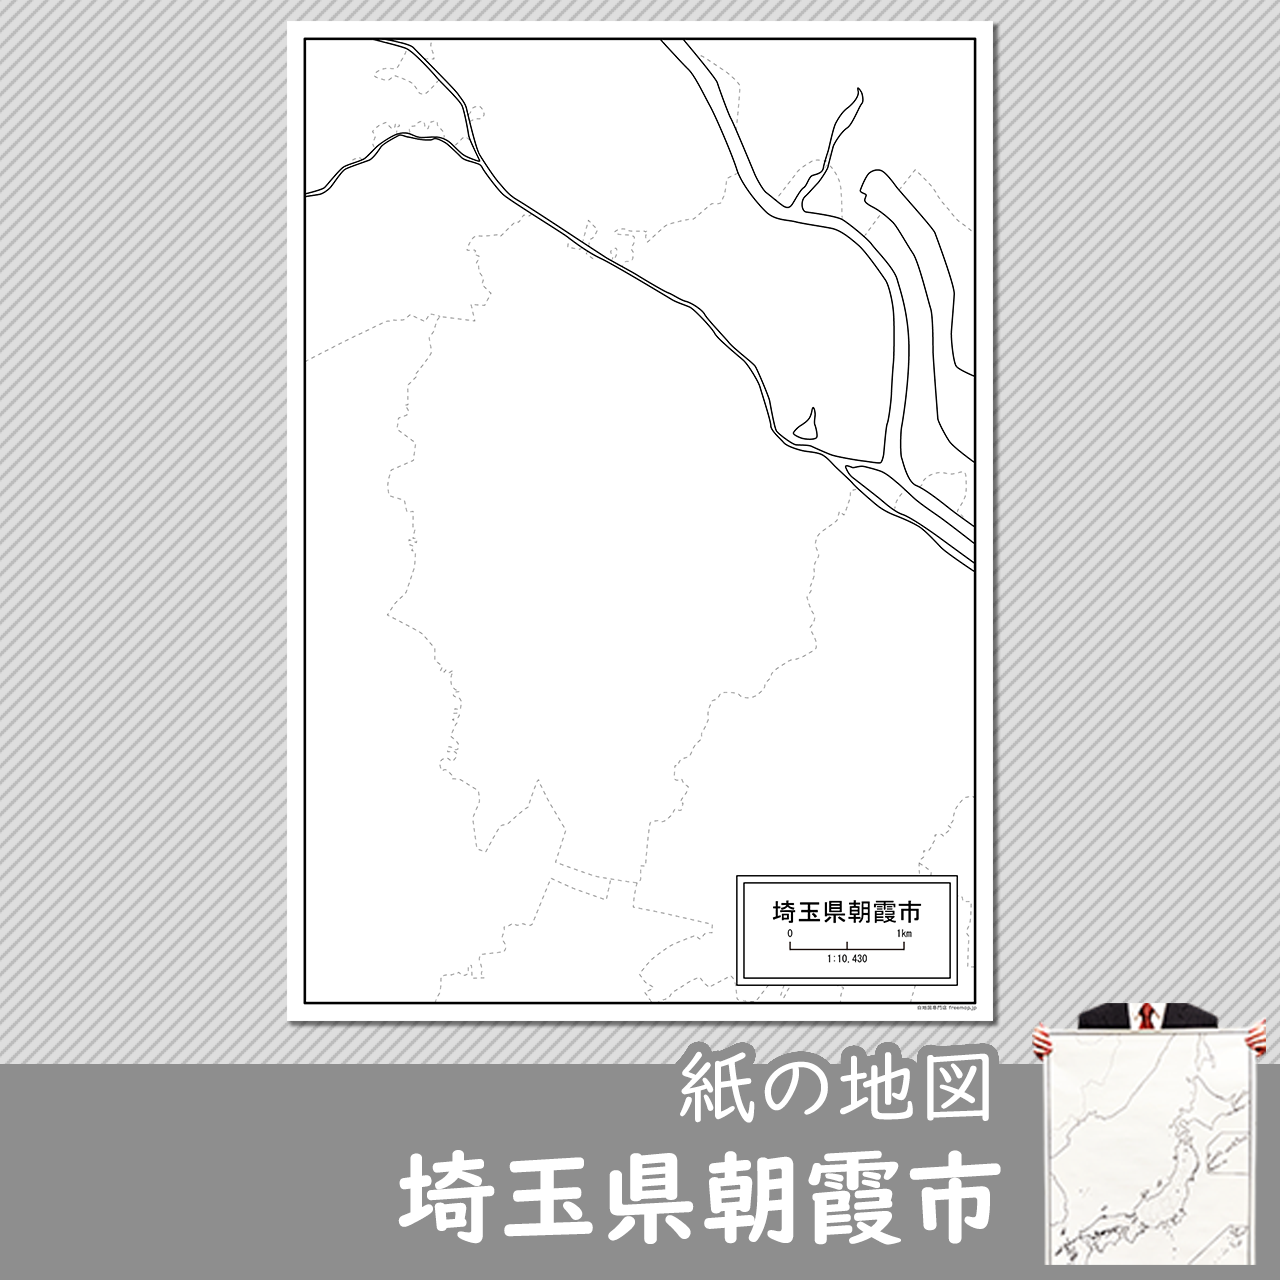 朝霞市の紙の白地図のサムネイル